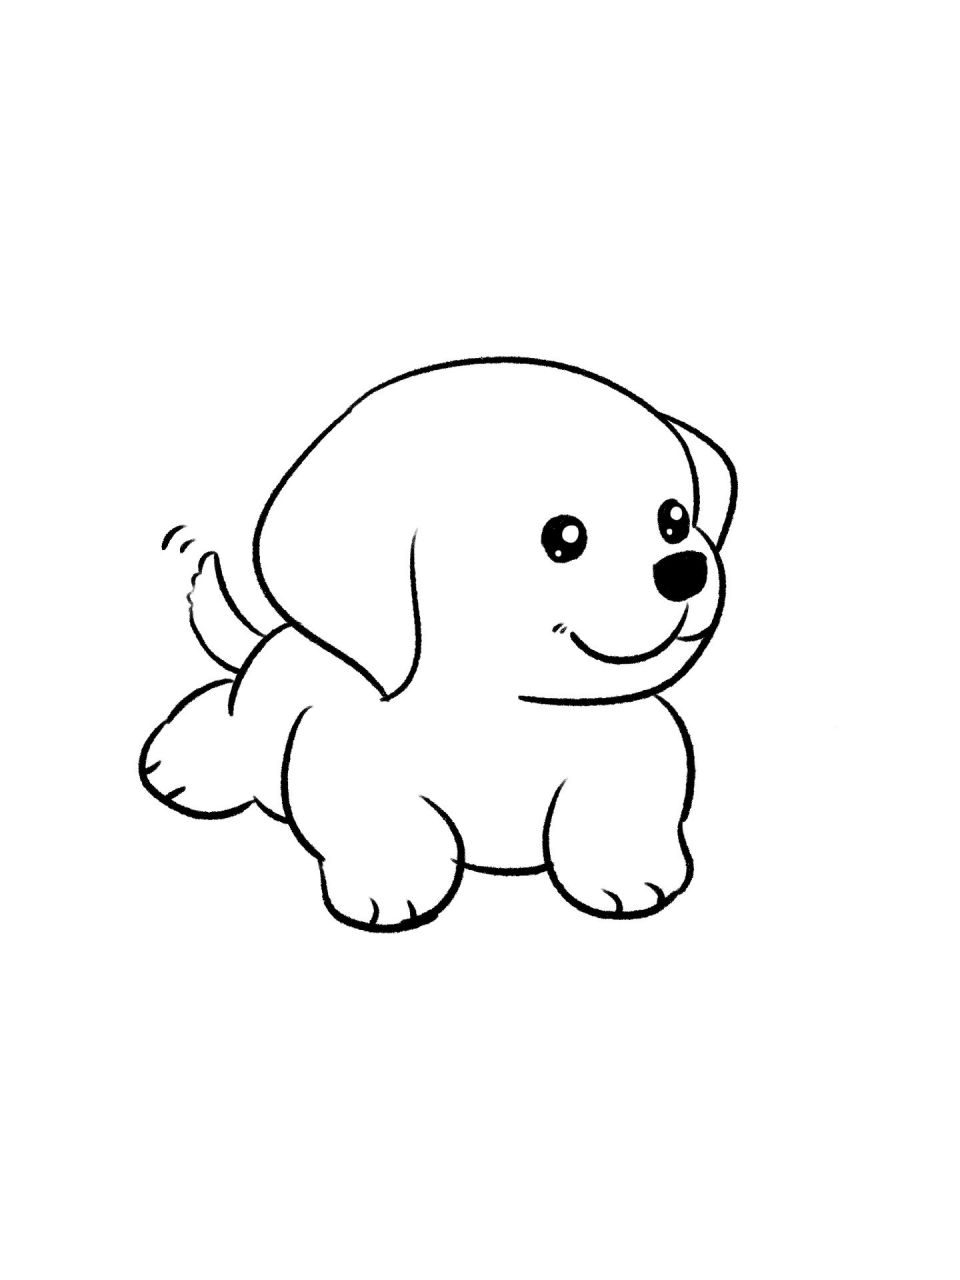 简易动物画法小狗图片